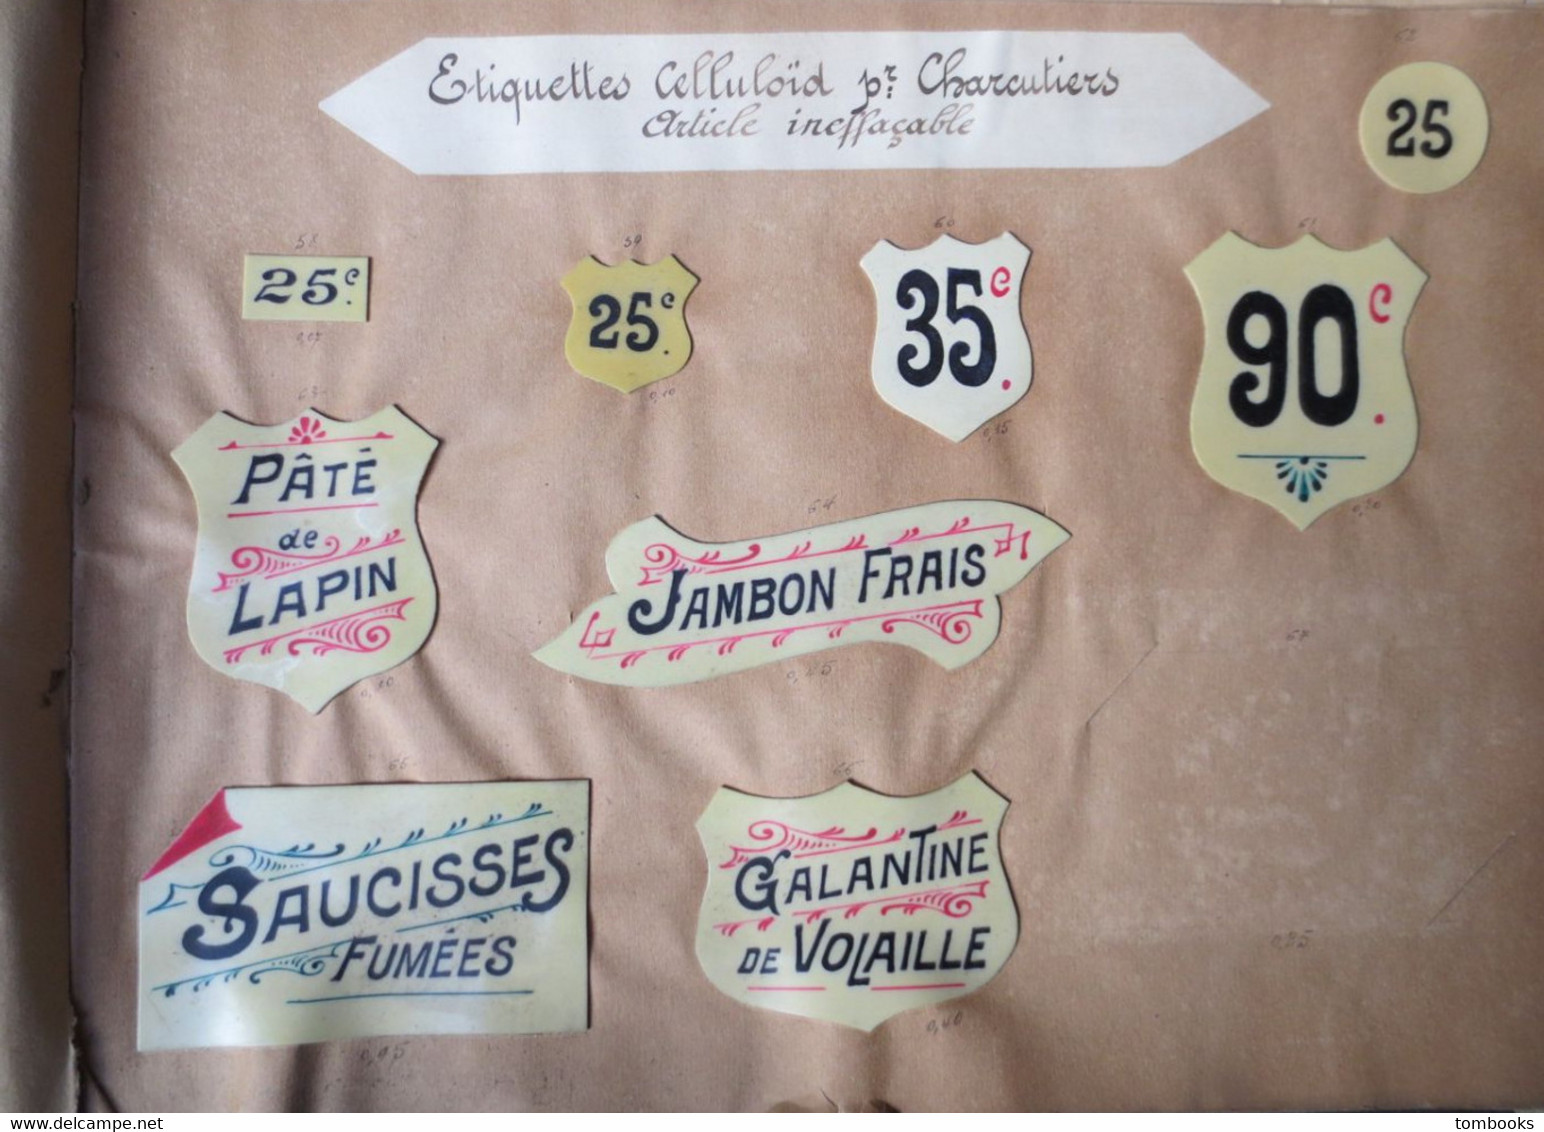 Le Havre - Catalogue - Spécimens d'étiquettes pour étalages - ( peintes à la main ) début XX e - très rare -